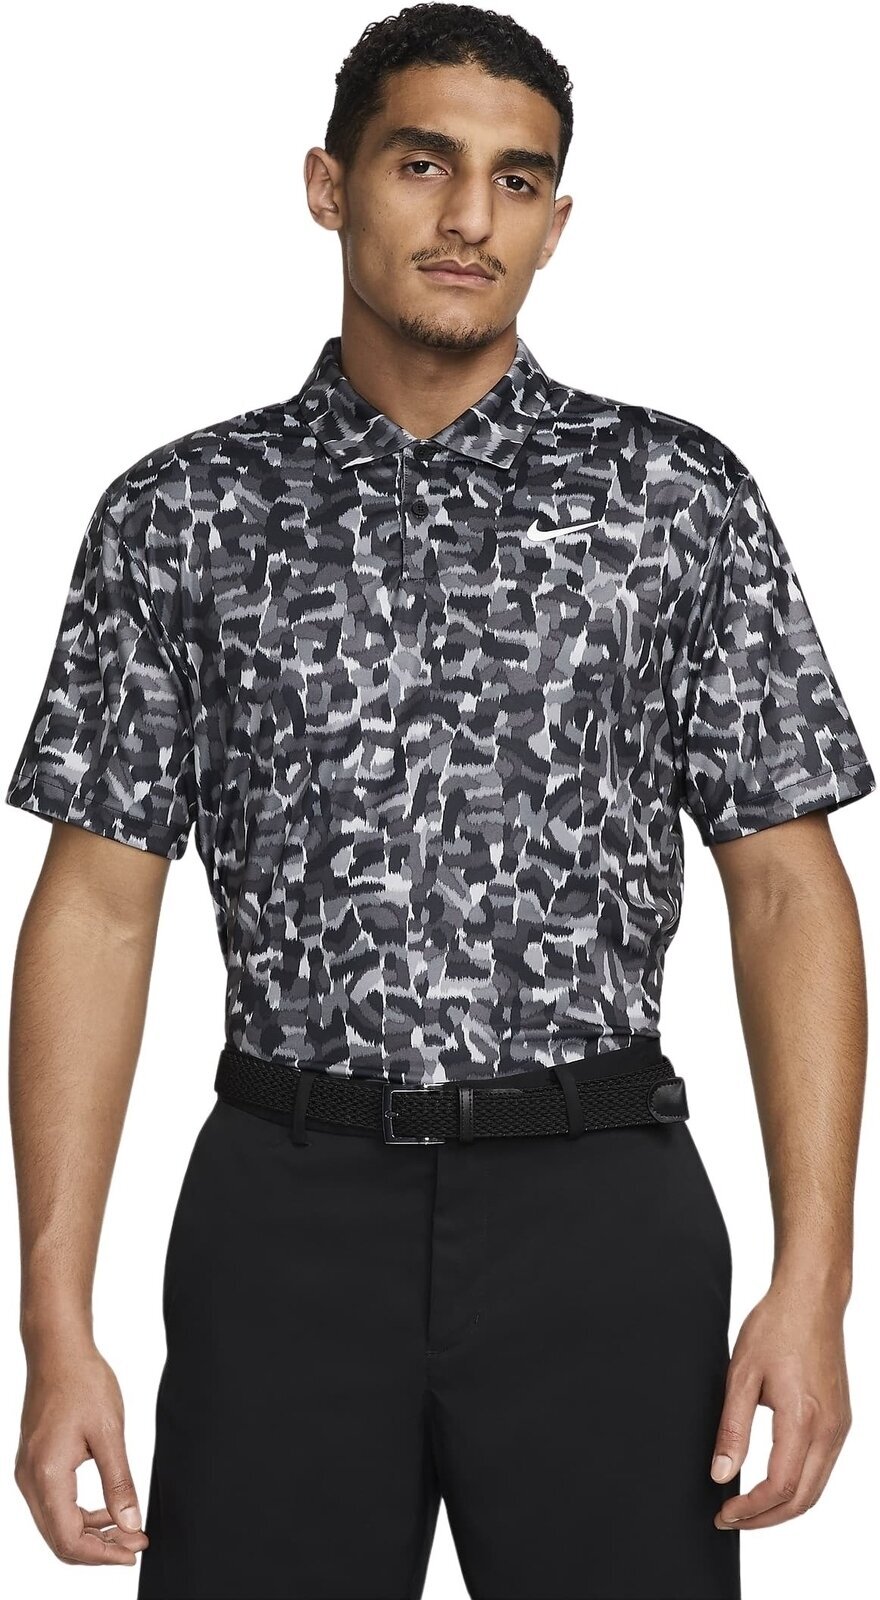 Camiseta polo Nike Dri-Fit Tour Confetti Print Mens Polo Light Smoke Grey/White M Camiseta polo